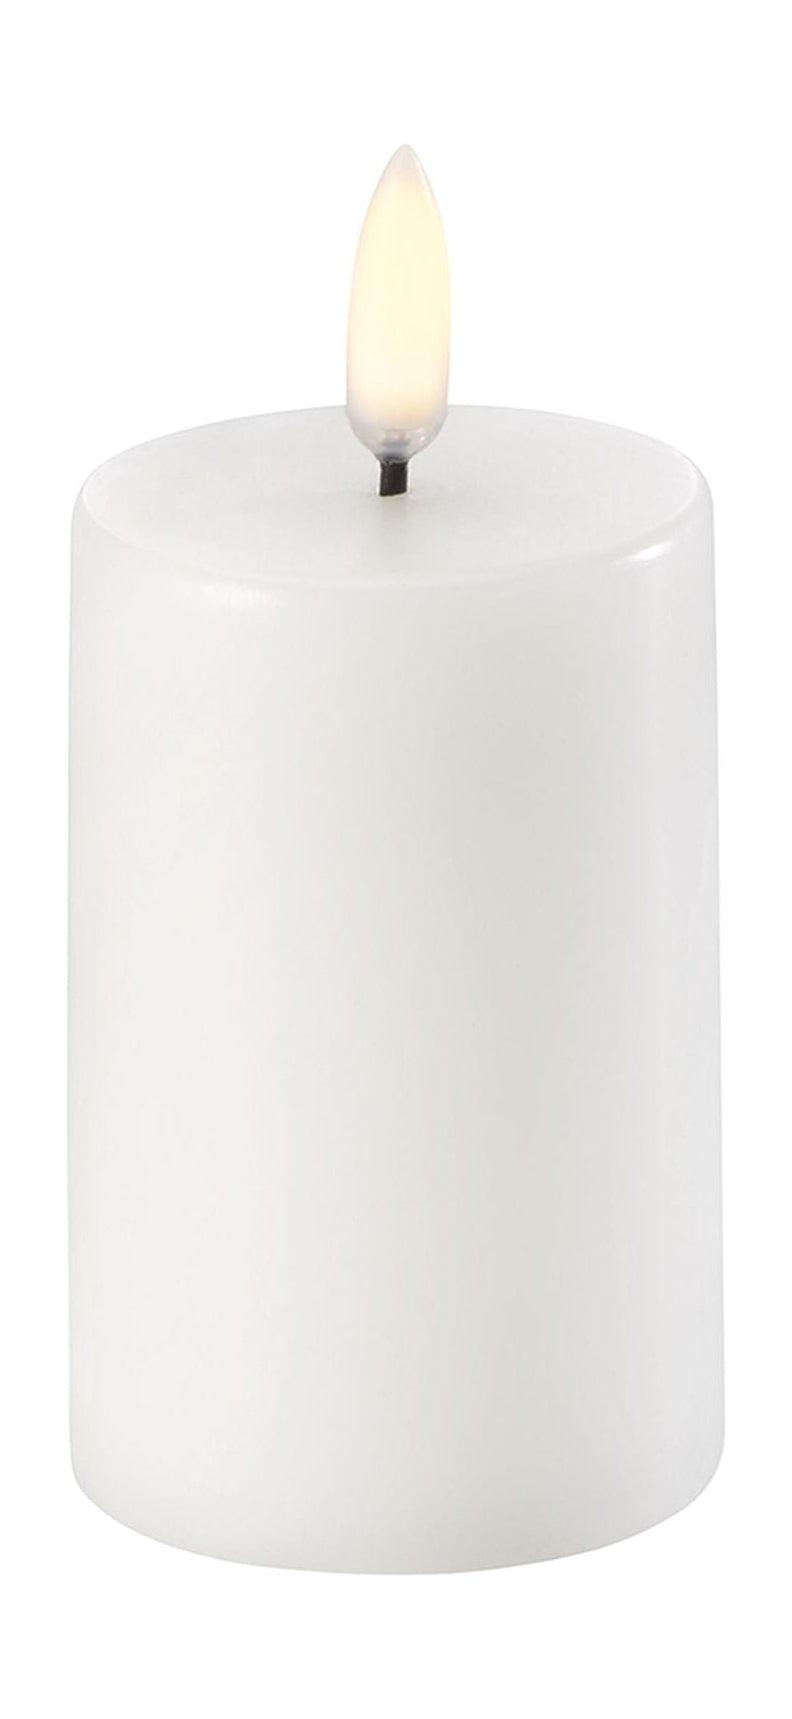 Uyuni Lighting LED -Säule Kerze 3 D Flamme Øx H 5x7,5 cm, nordisches Weiß